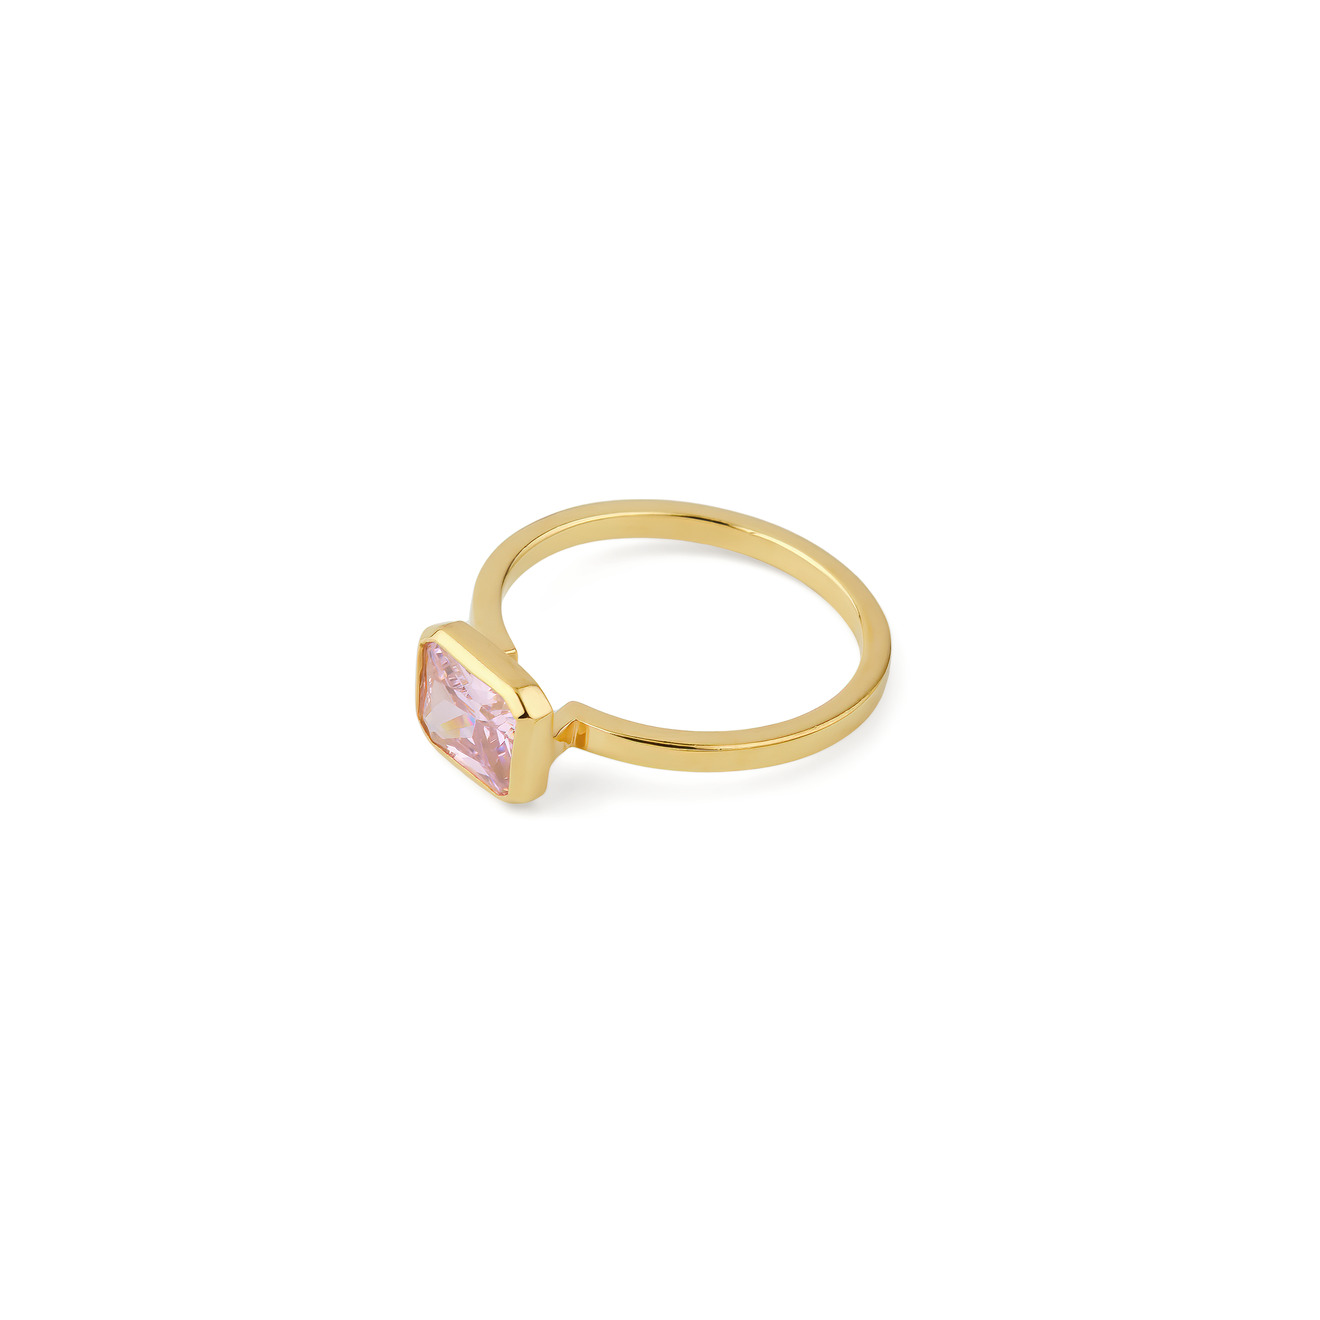 KRASHE jewellery Позолоченное кольцо Lollypop с розовым кристаллом krashe jewellery кольцо вороны москвички с цитринами и хризолитами